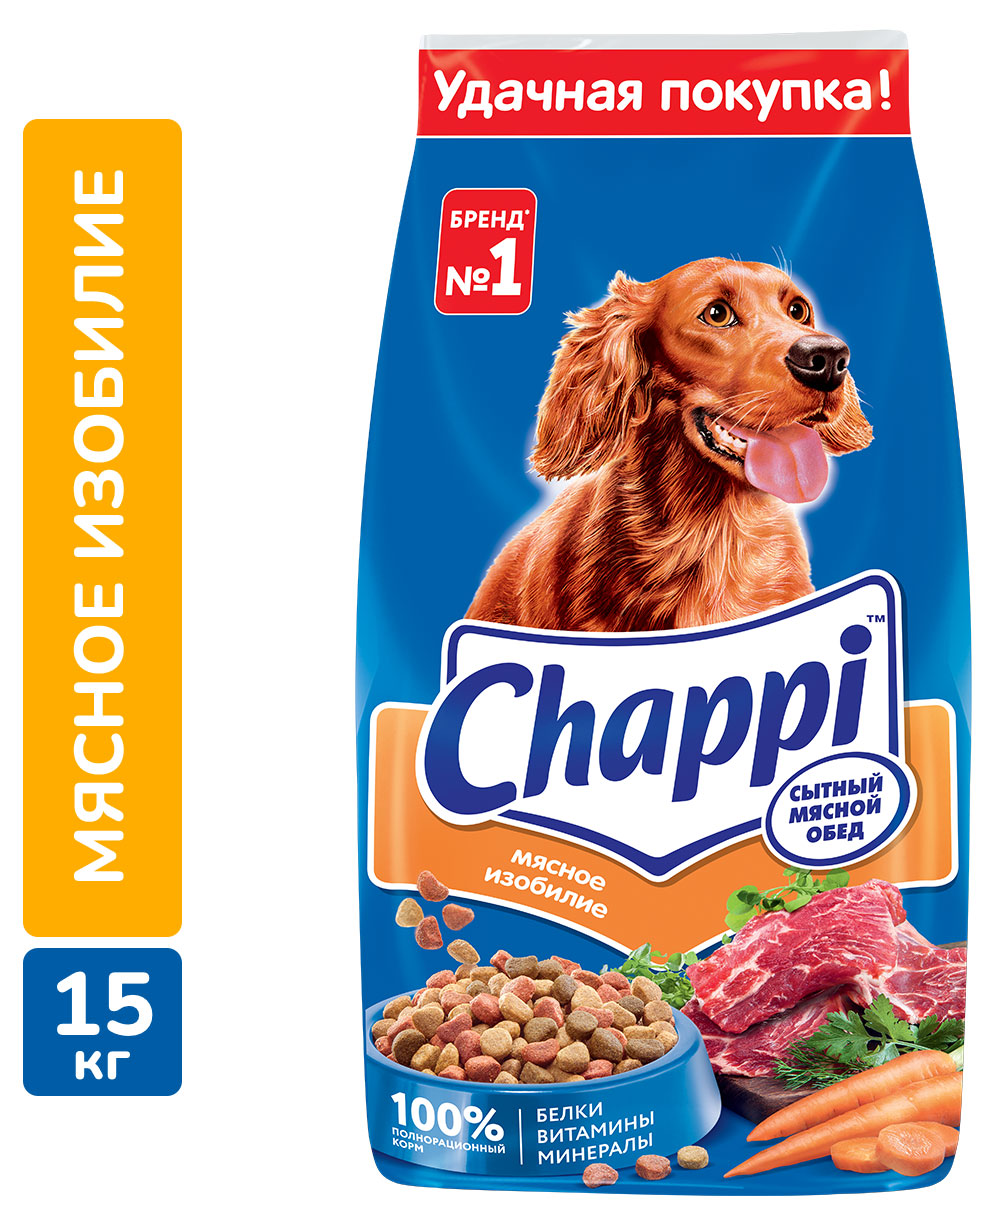 Chappi | Сухой полнорационный корм для собак Chappi Сытный мясной обед с овощами и травами, 15 кг